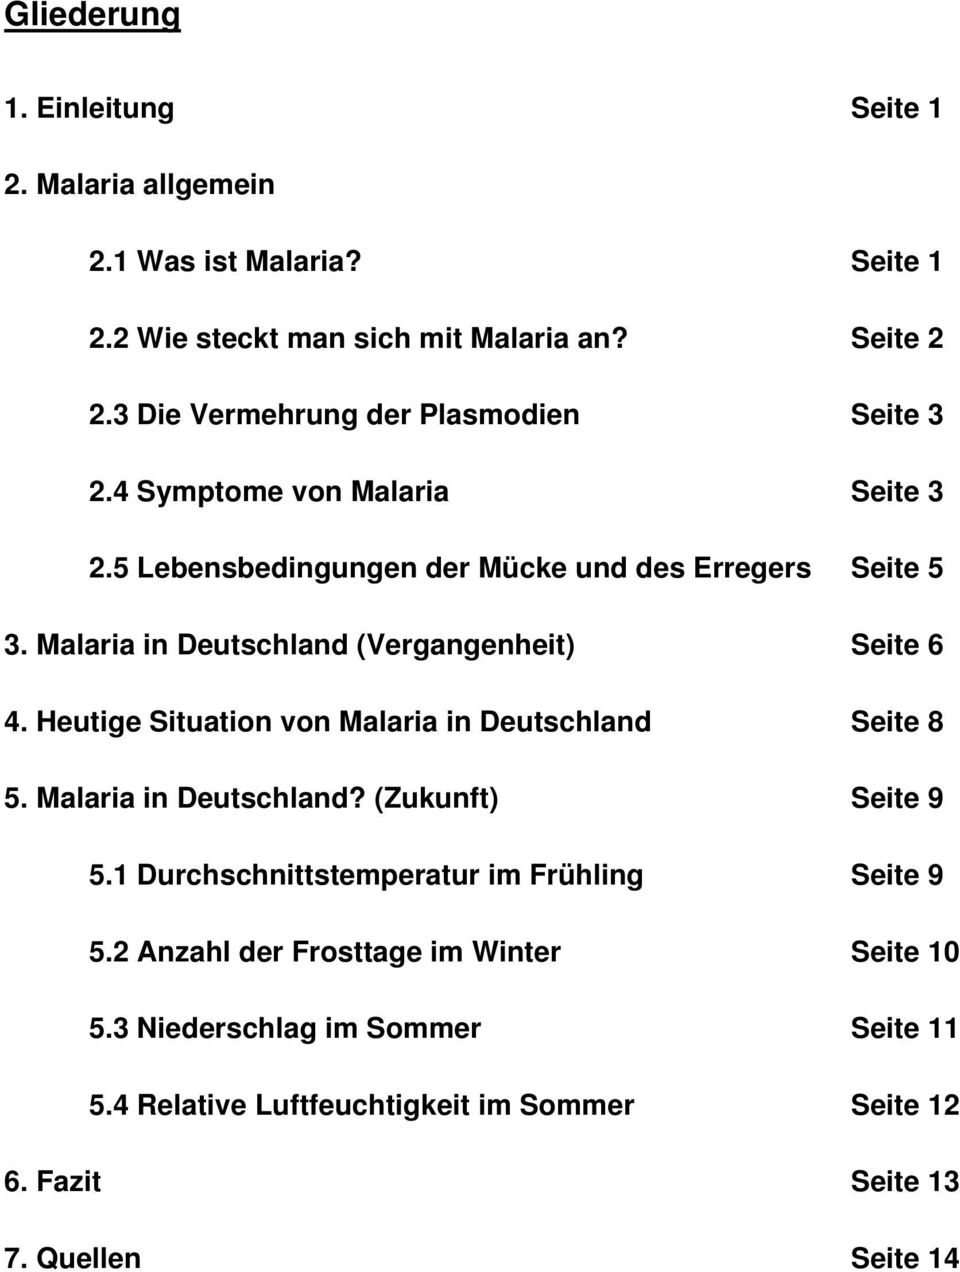 Malaria in Deutschland (Vergangenheit) Seite 6 4. Heutige Situation von Malaria in Deutschland Seite 8 5. Malaria in Deutschland? (Zukunft) Seite 9 5.